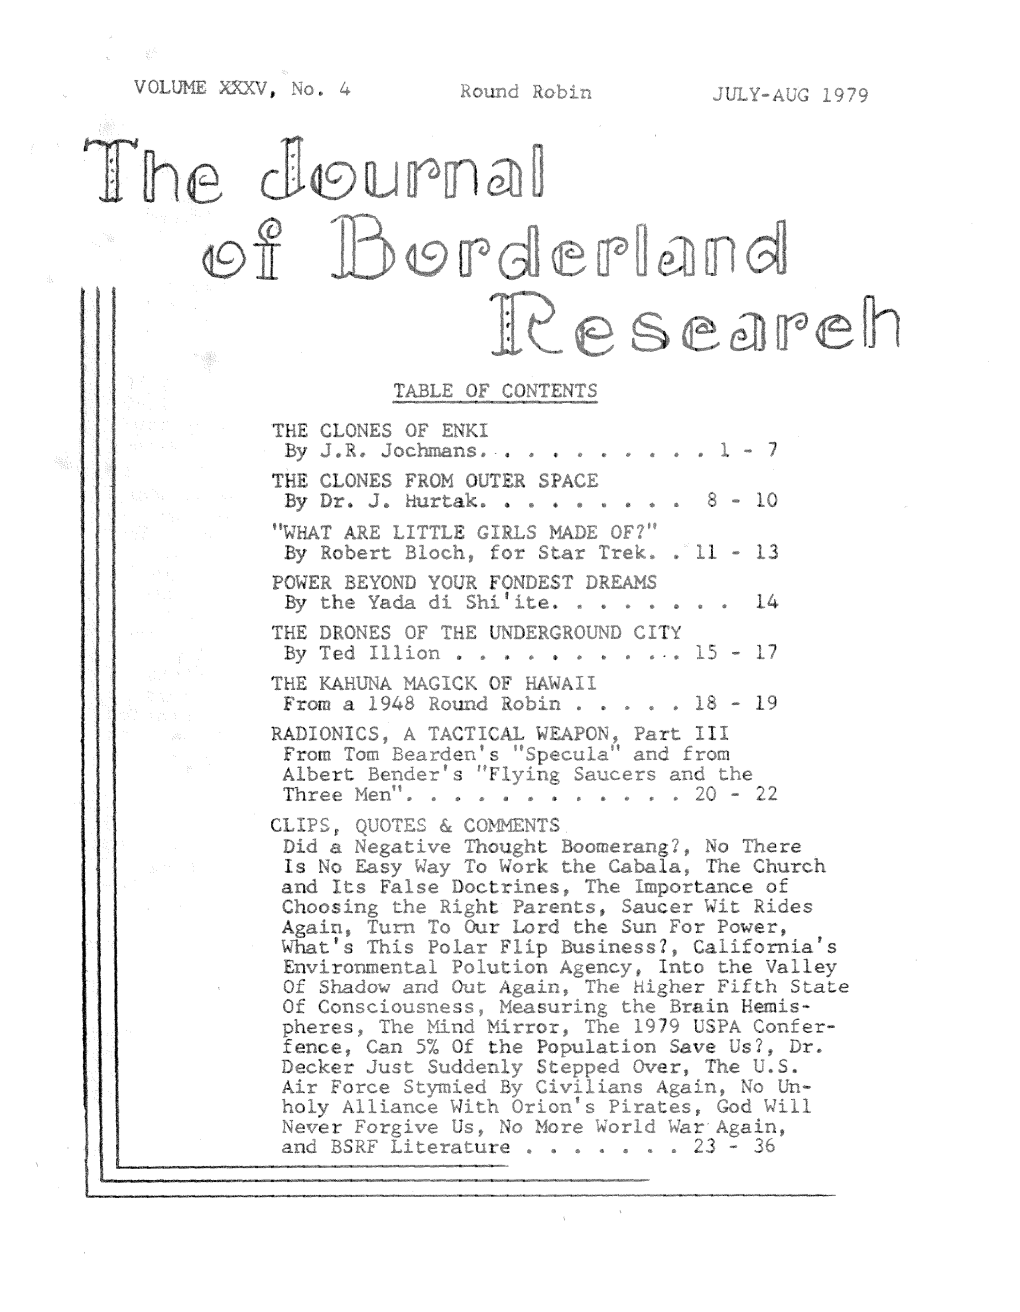 Journal of Borderland Research V35 N4 Jul-Aug 1979